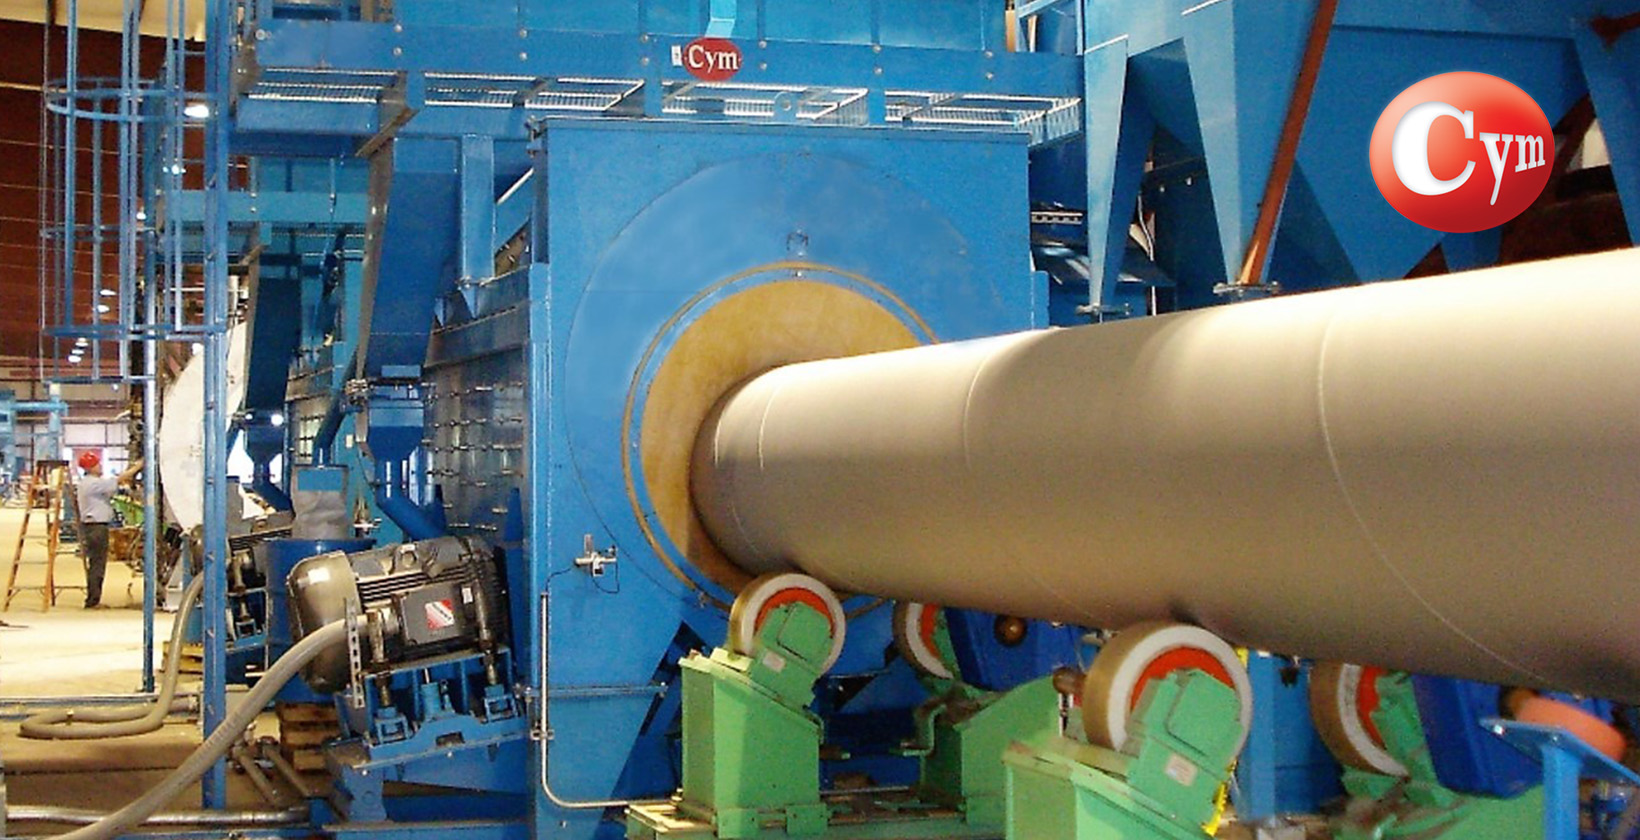 equipamento de jateamento para aplicação de revestimento em tubos de grande diâmetro, como oleodutos, aquedutos e gasodutos